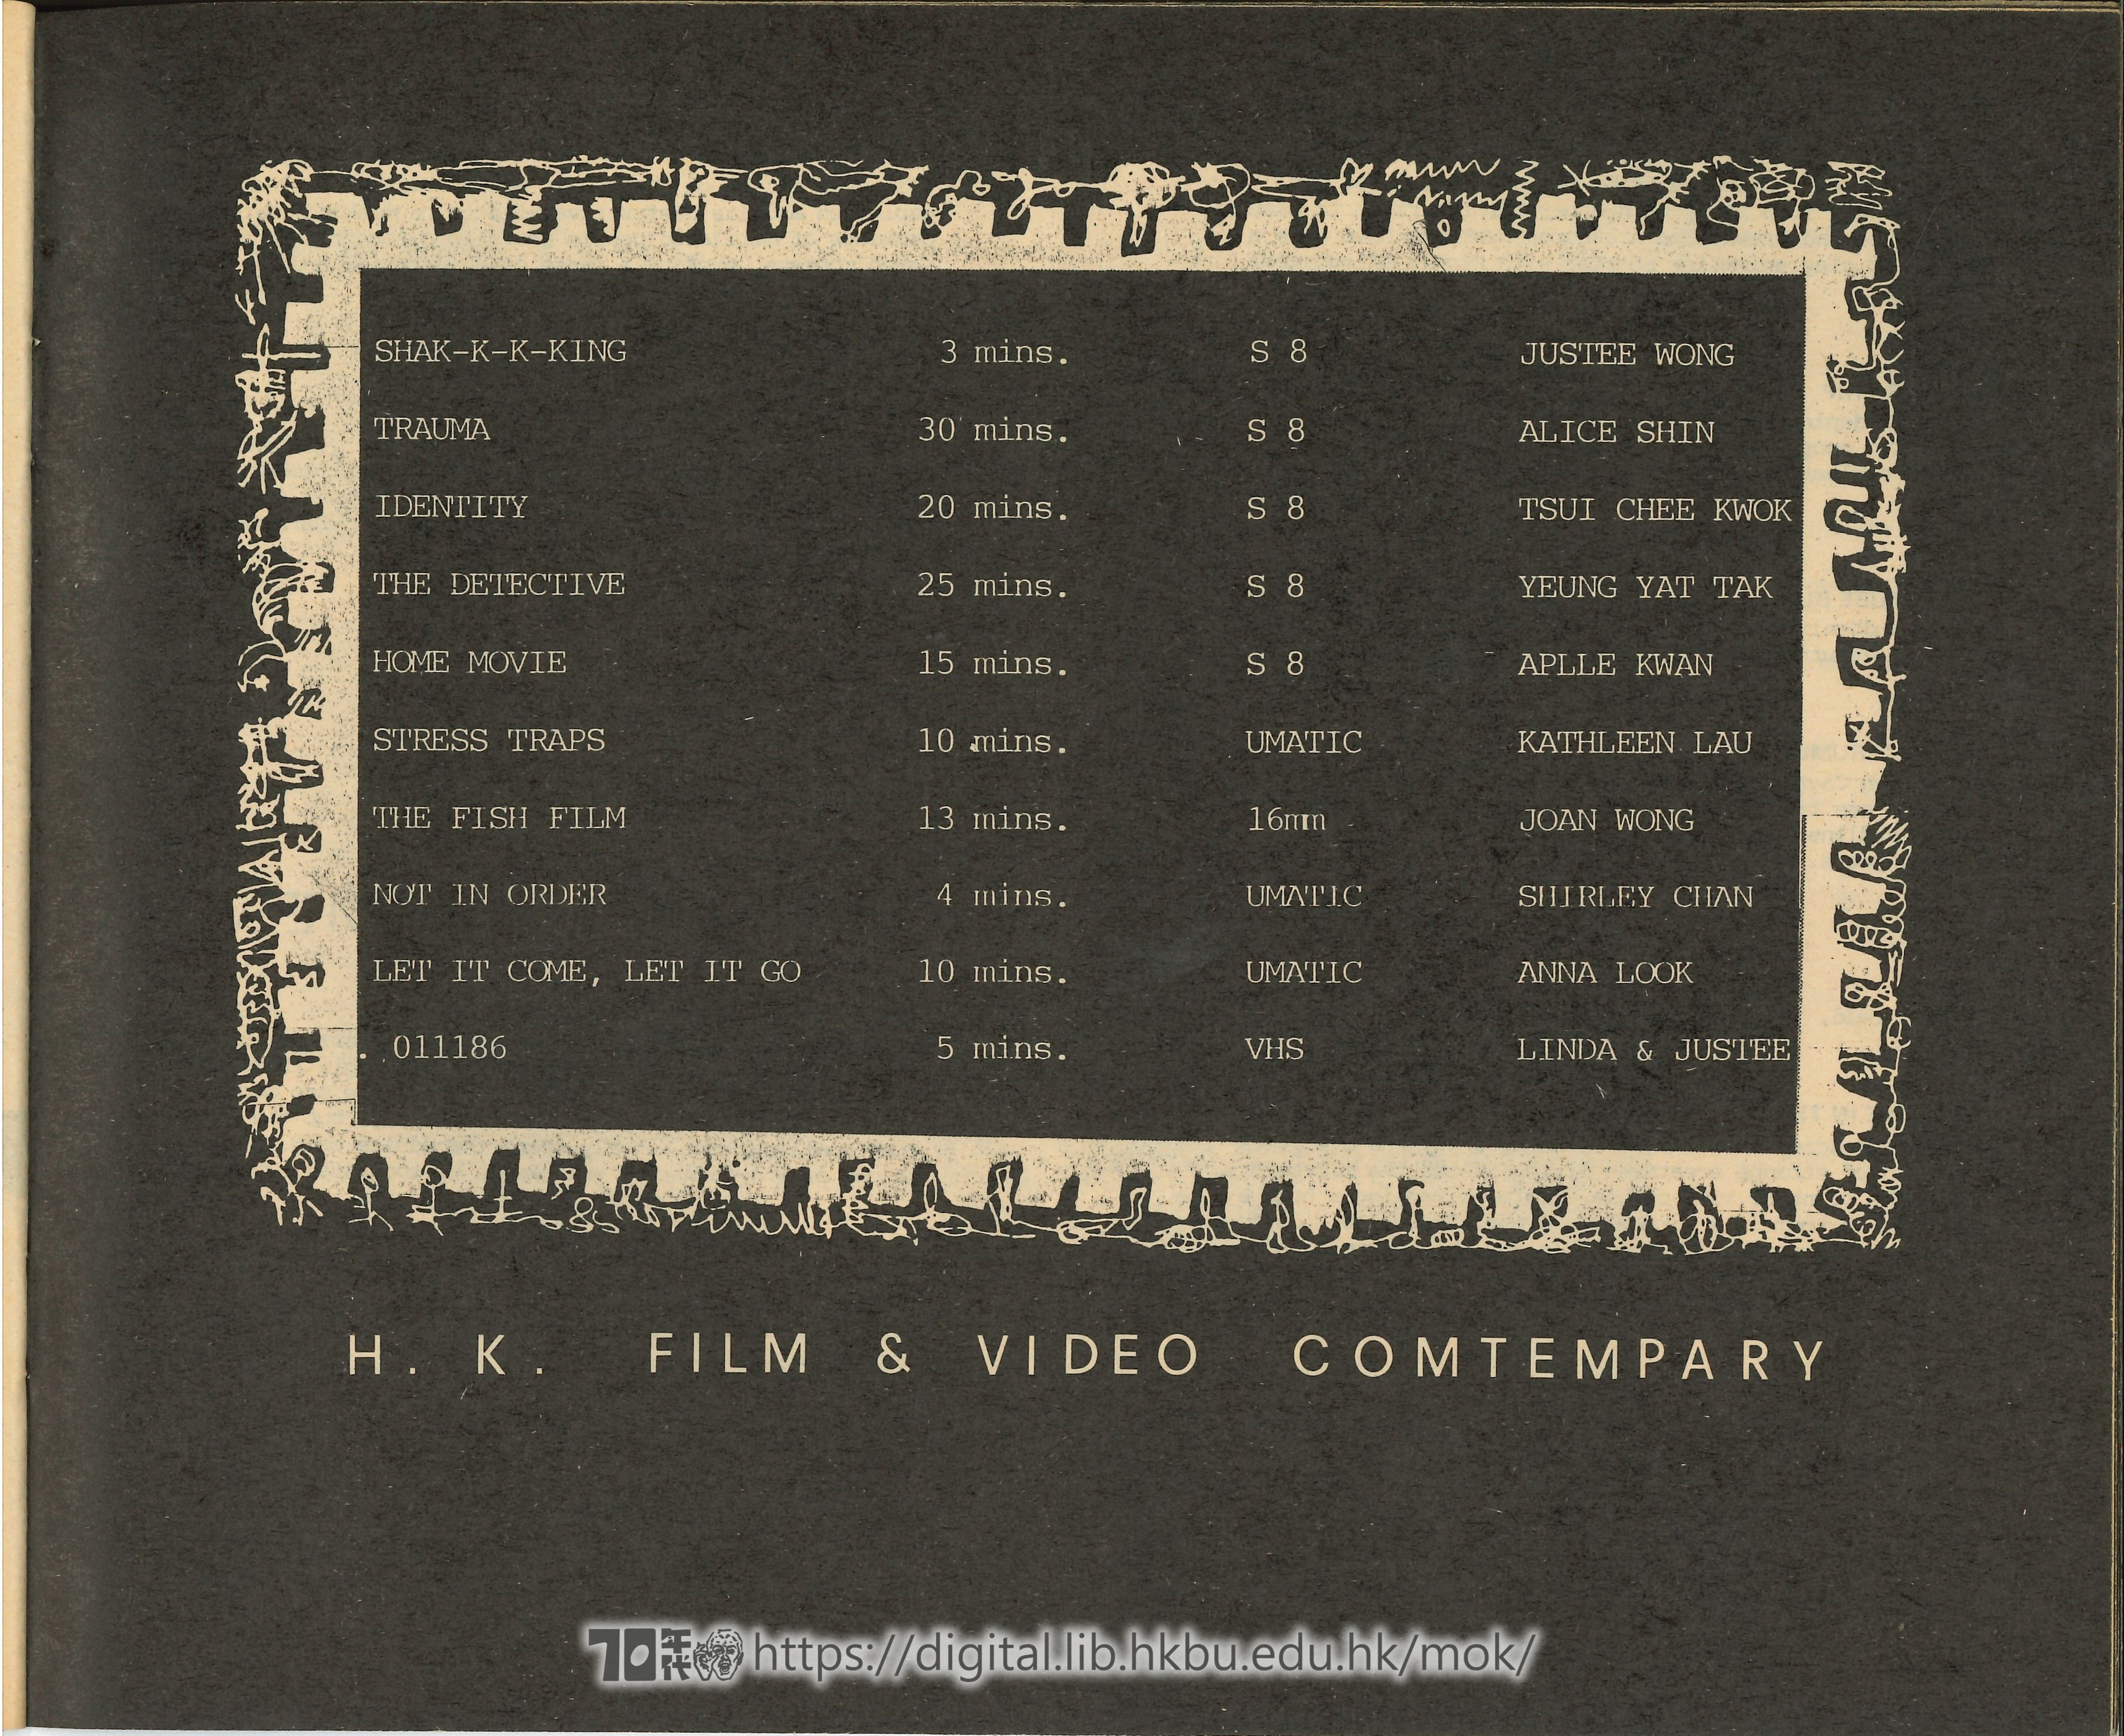   另類：電影及錄像節1986 (內有黑鳥一頁） 火鳥電影會, 藝術中心 